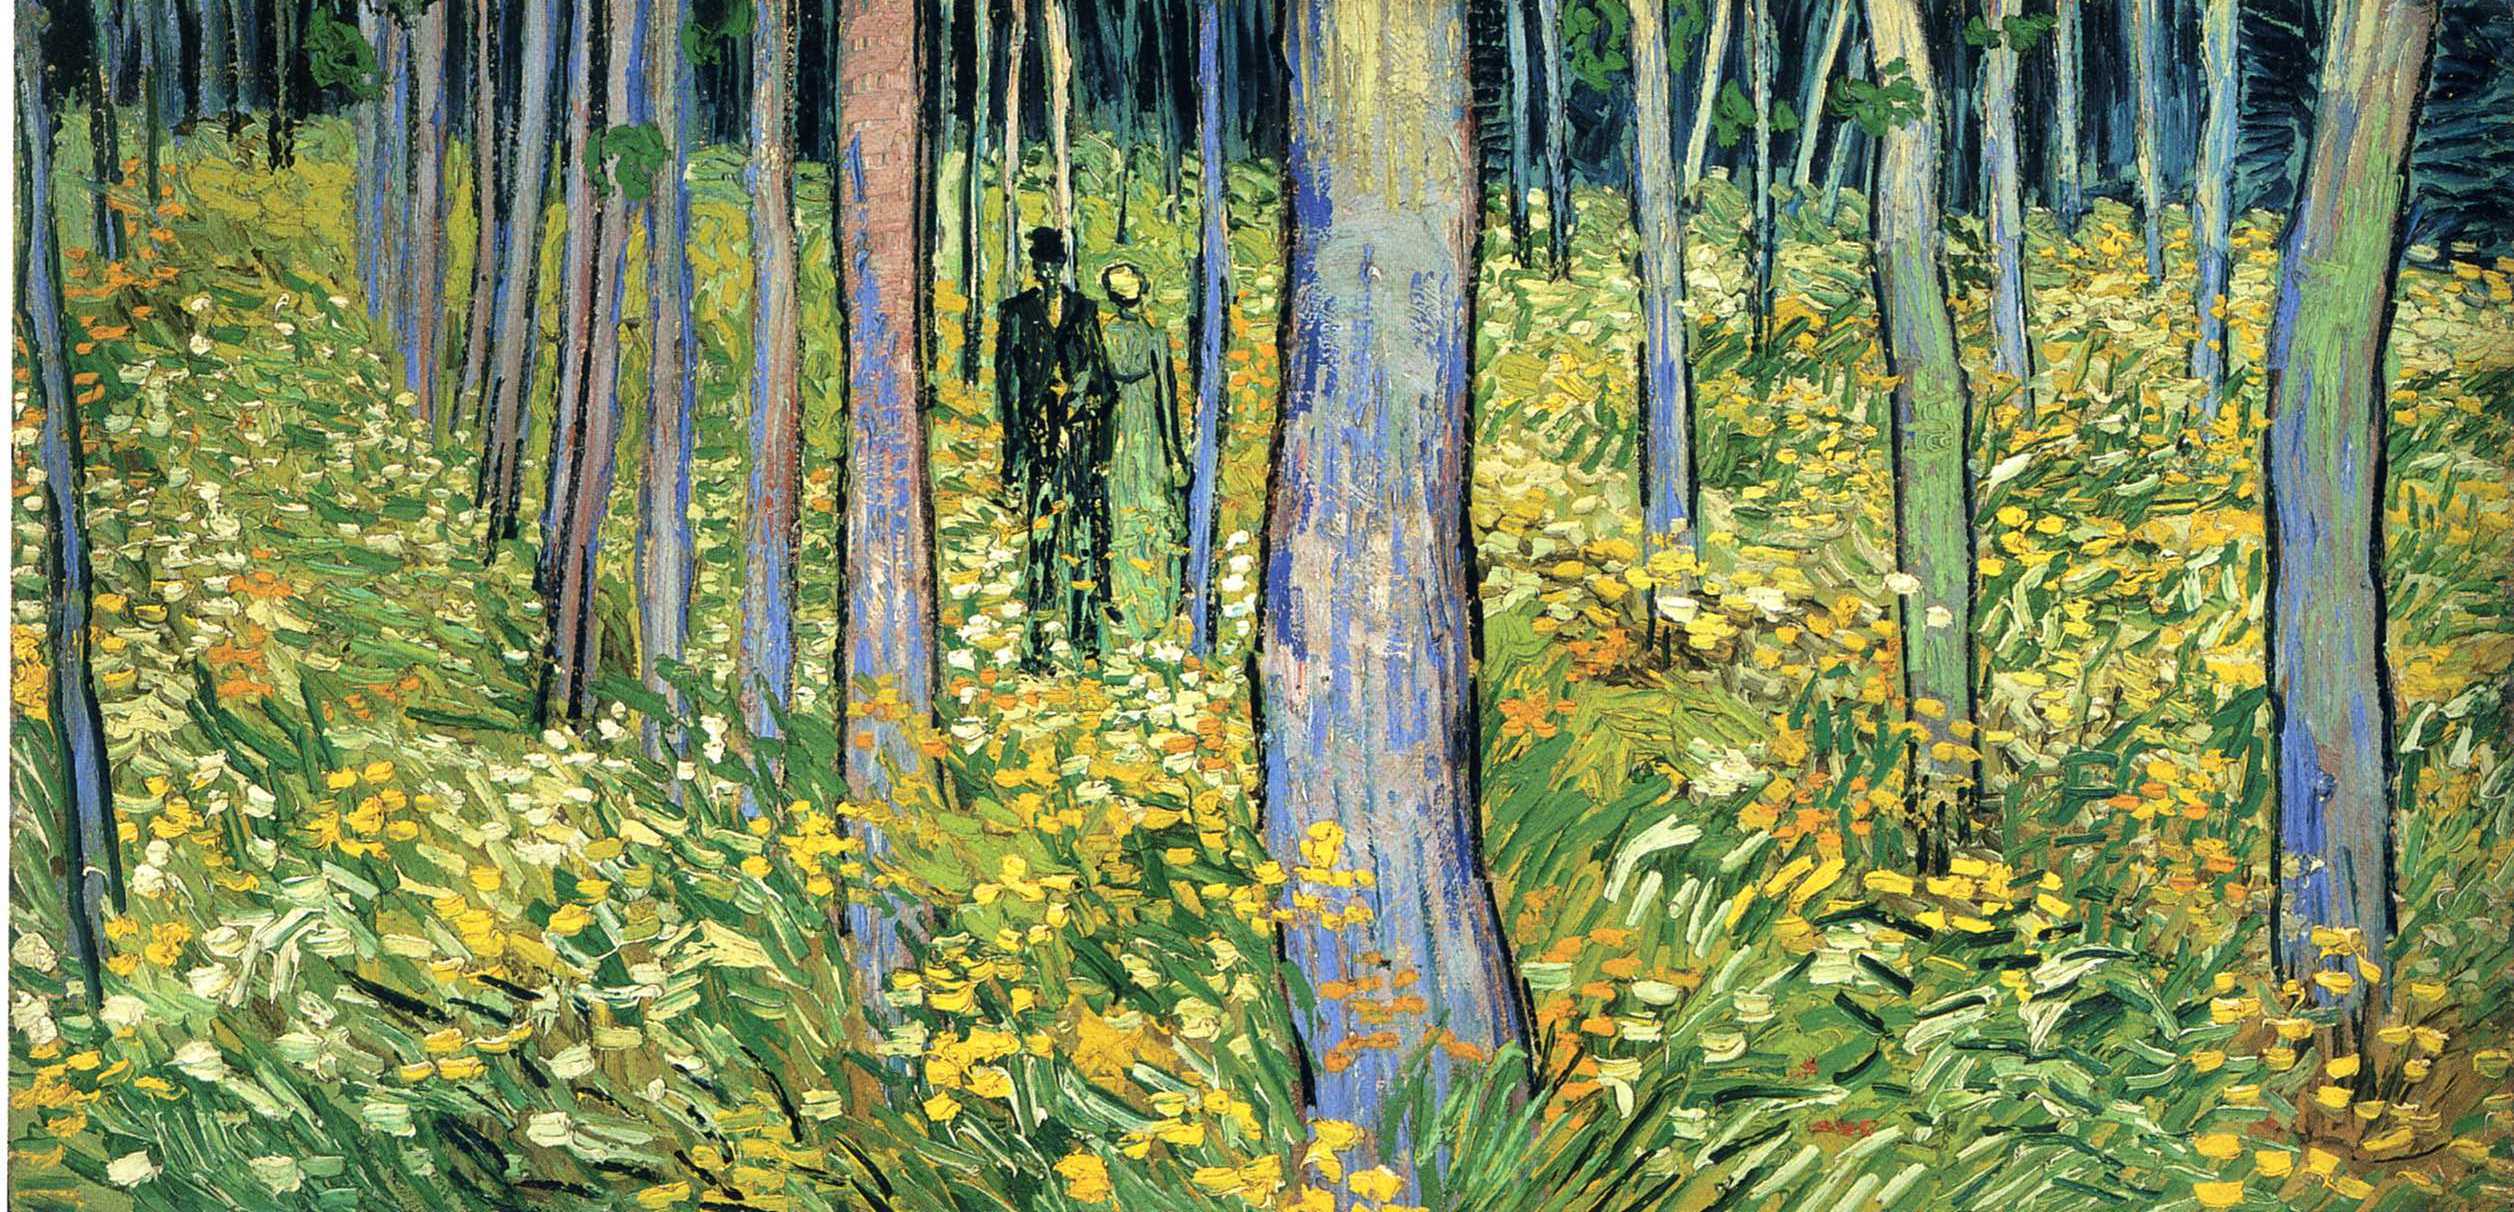 İki Figürlü Büyüme by Vincent van Gogh - 1890 - 19 1/2 x 39 1/4 in 